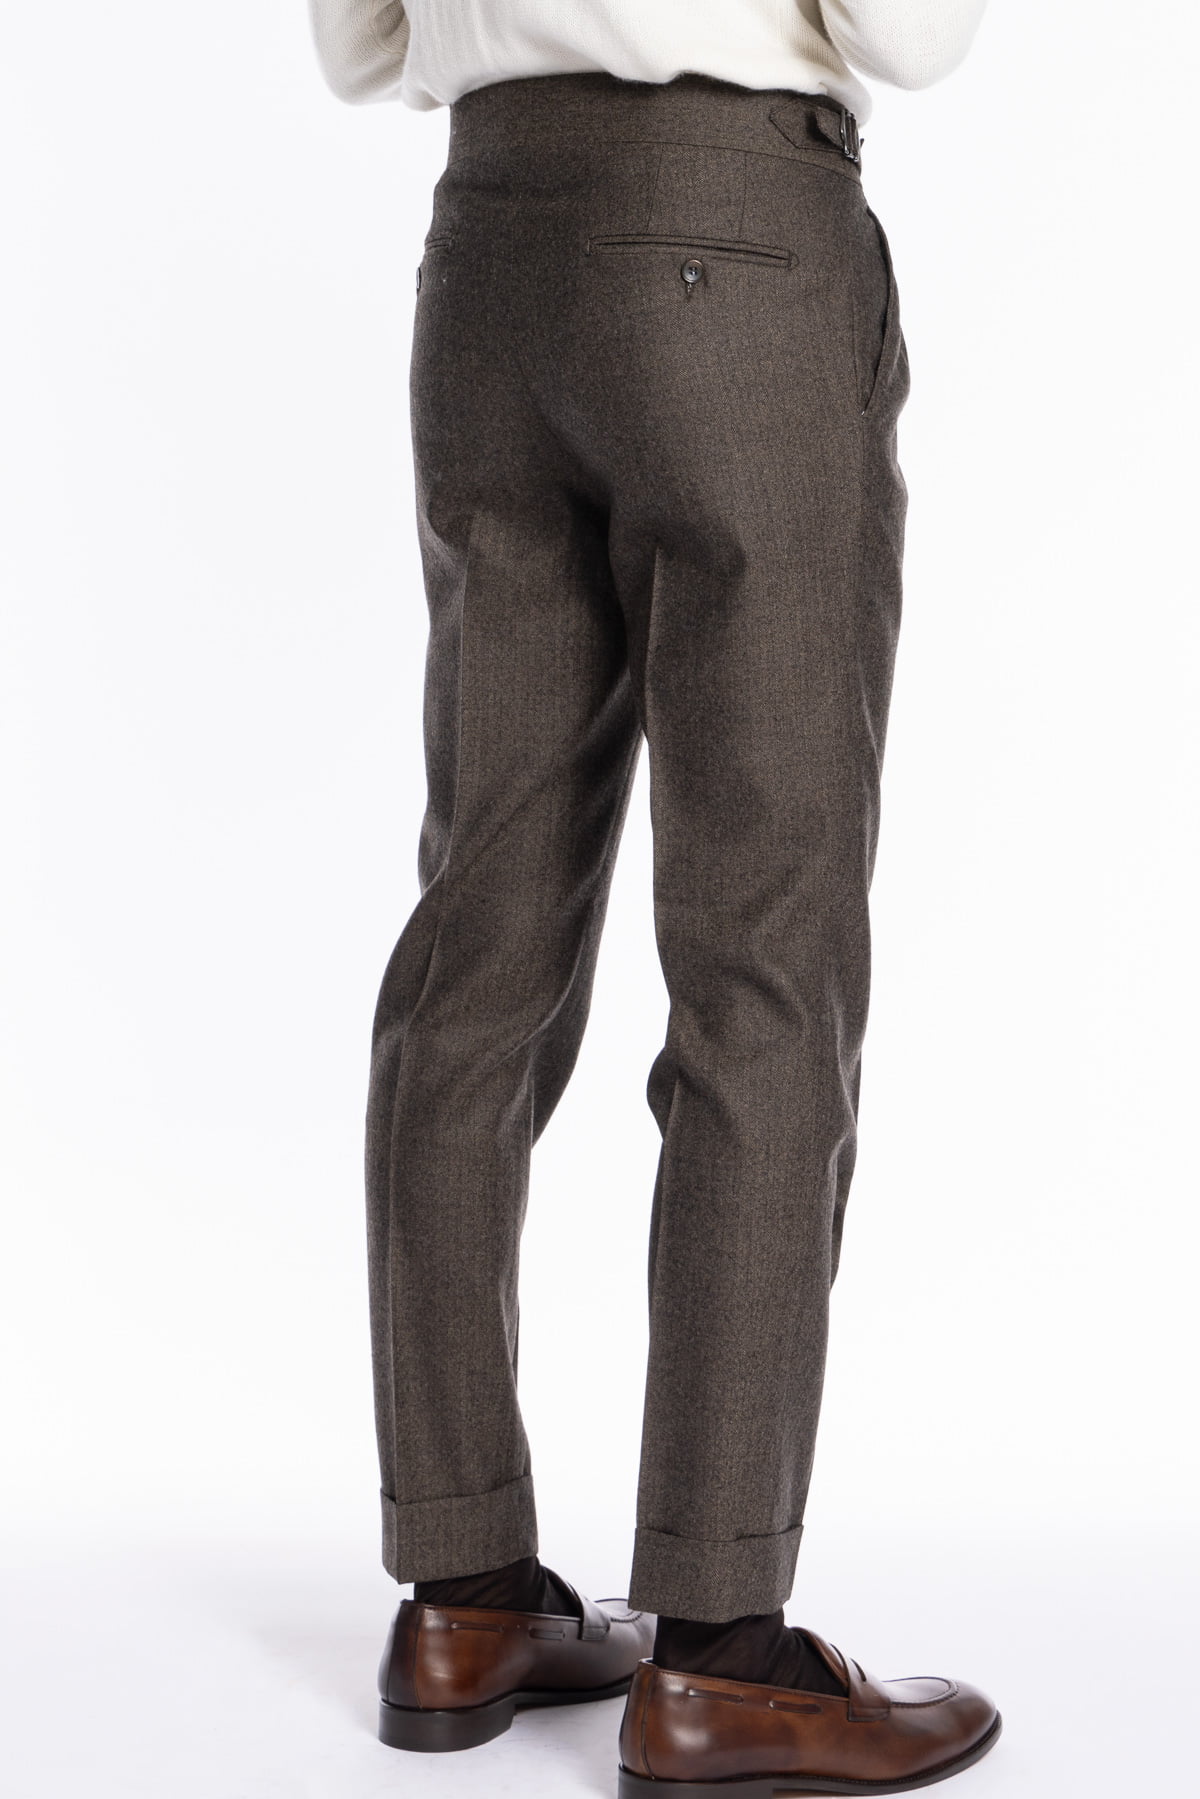 Pantalone uomo marrone spigato vita alta tasca america in lana flanella Holland & Sherry con doppia pinces e fibbie laterali regolabili